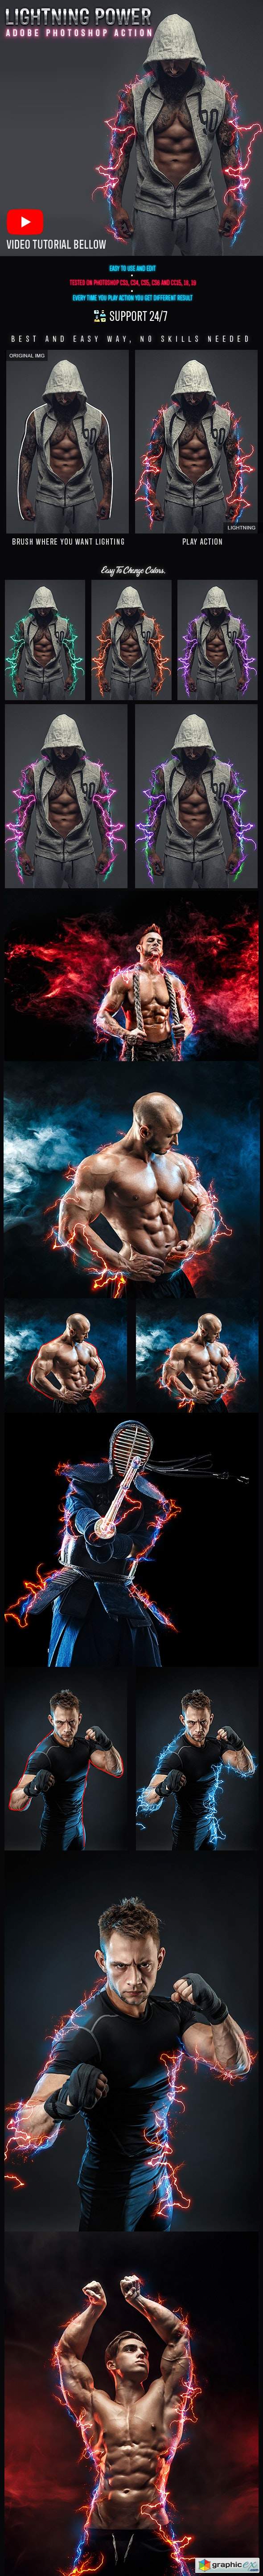 Lightning Power Photoshop Action